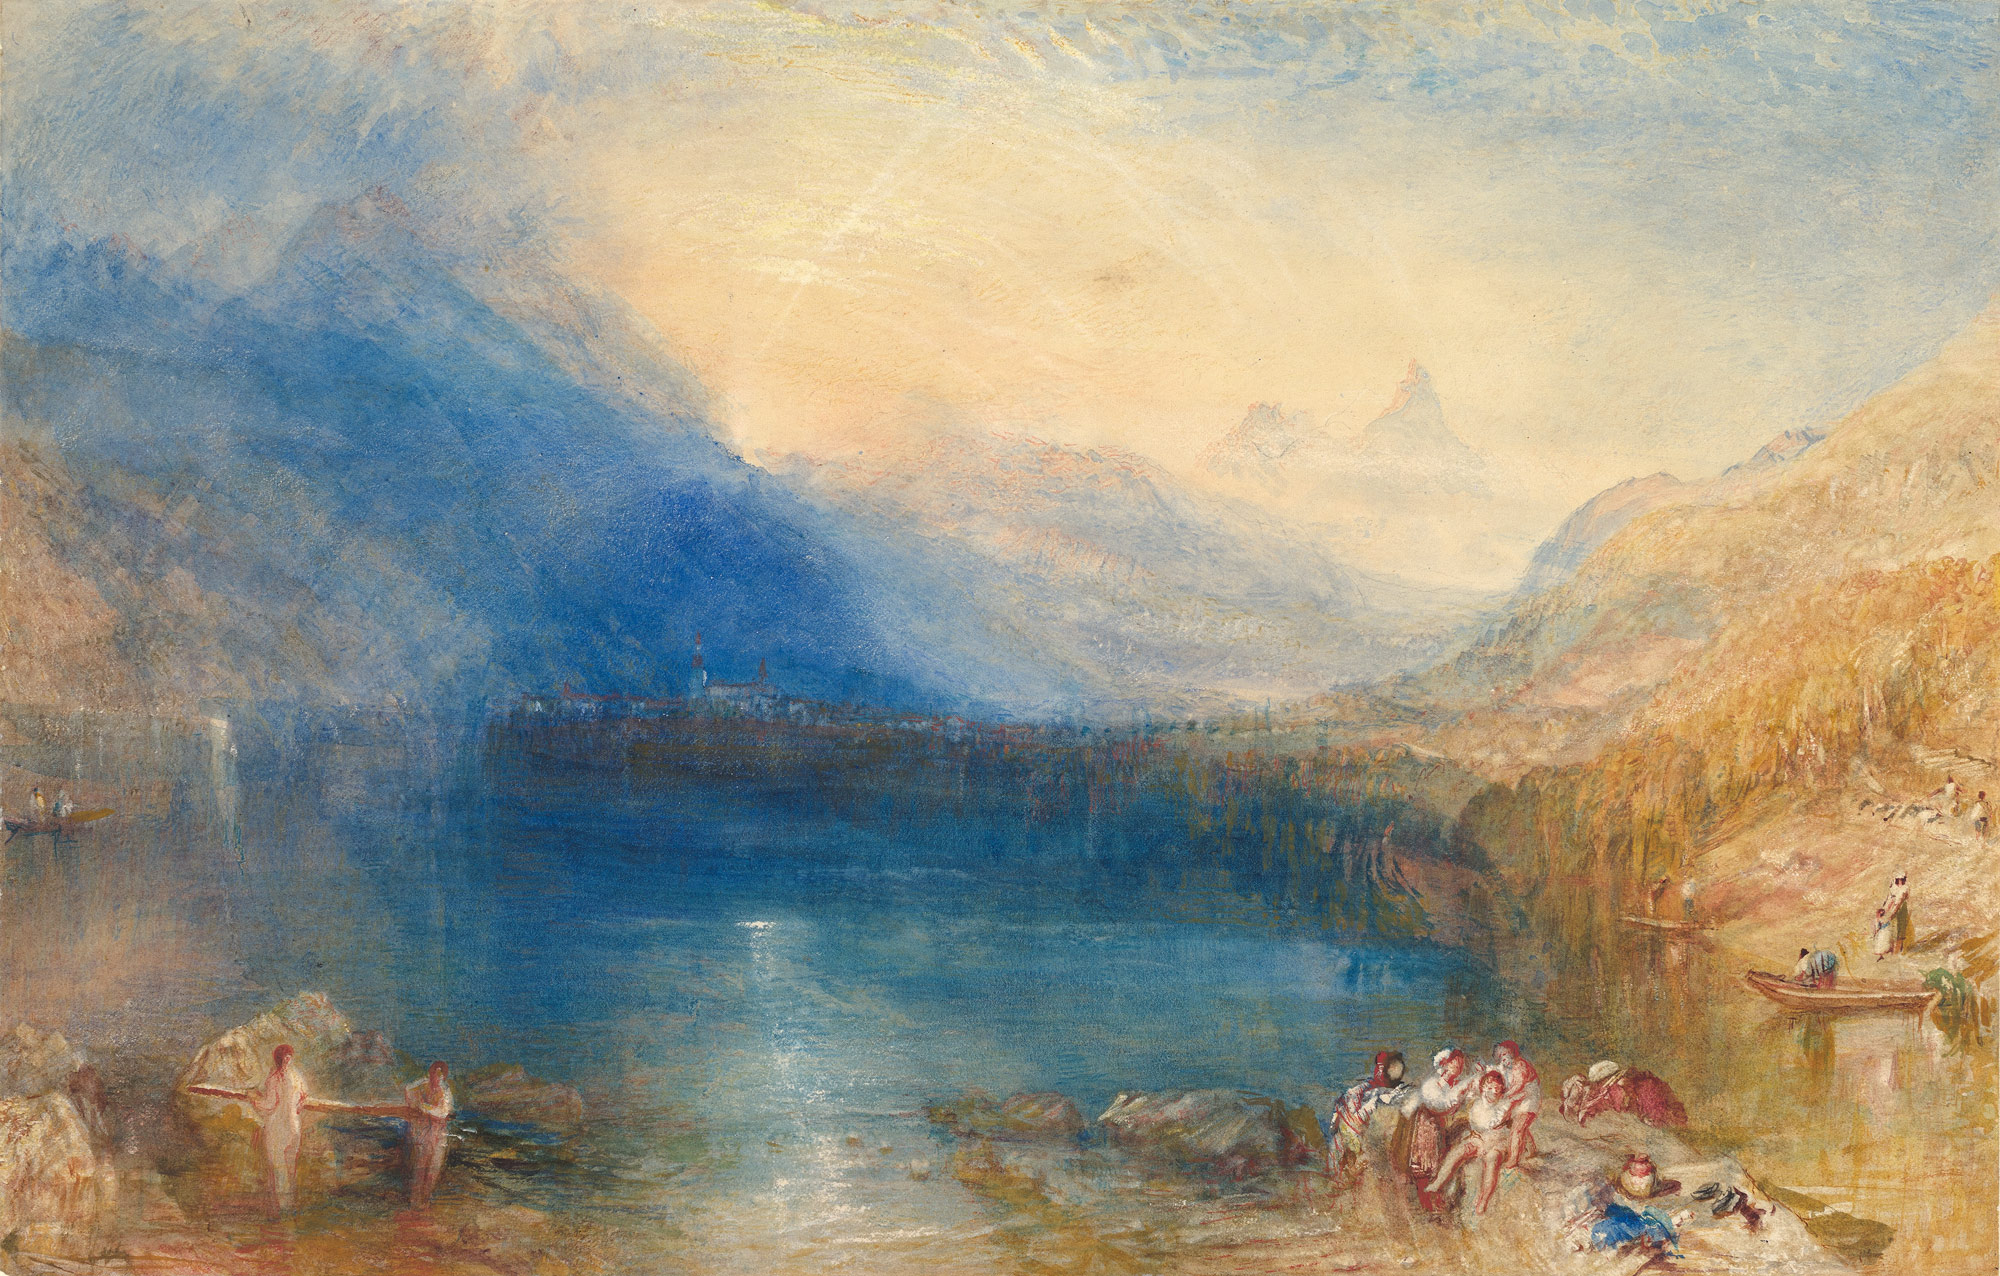 El Lago de Zug by Joseph Mallord William Turner - 1843 Museo Metropolitano de Arte